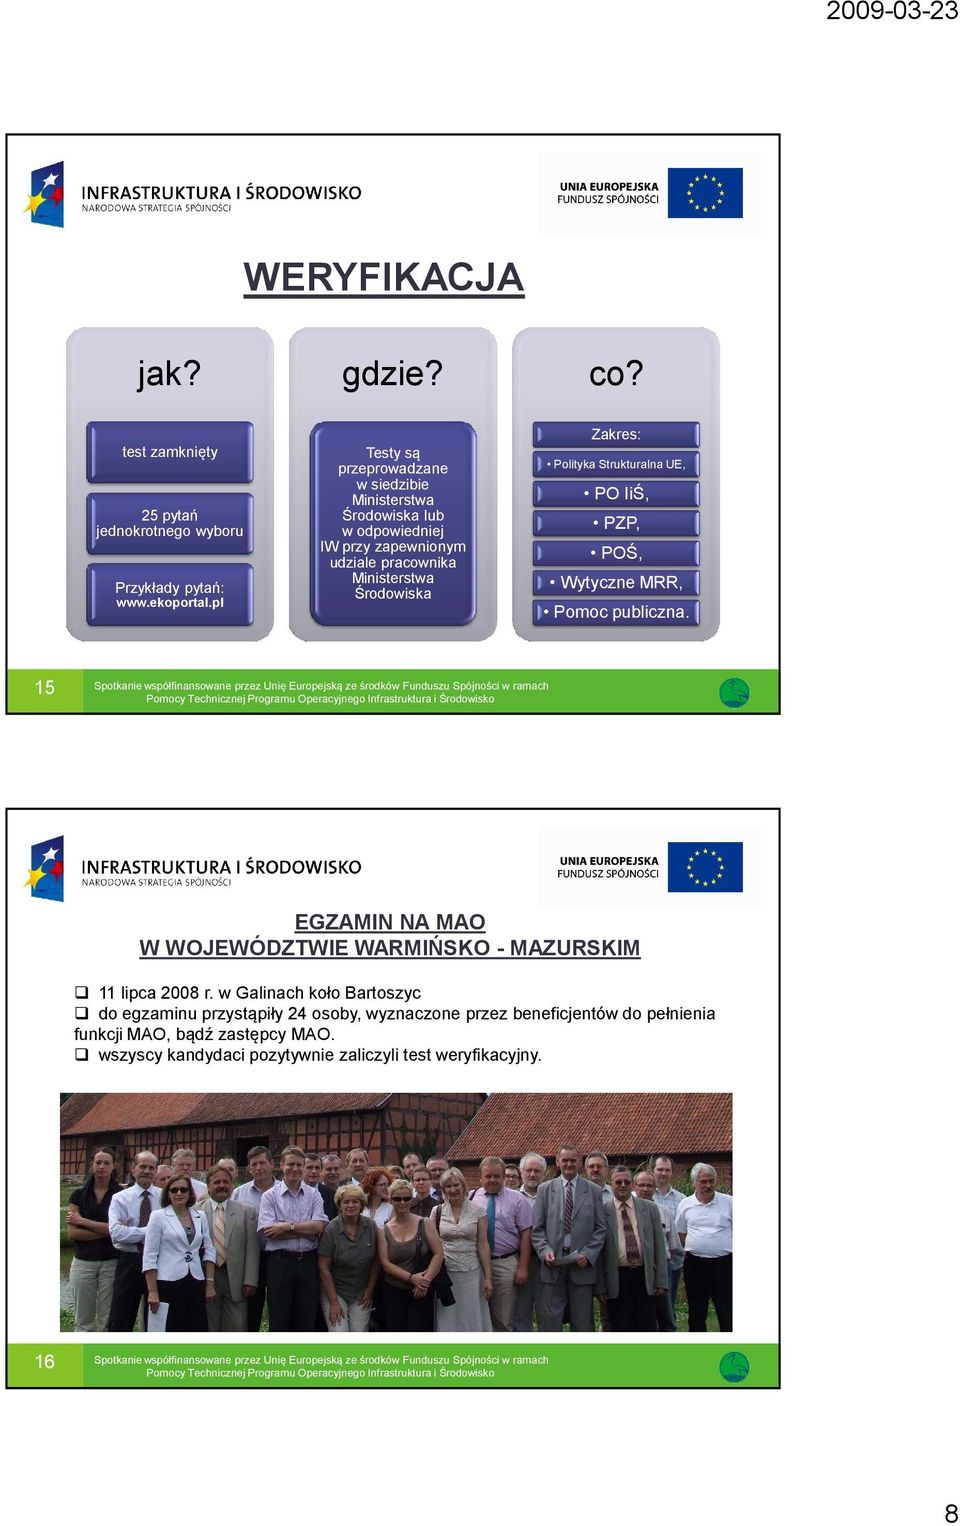 Zakres: Polityka Strukturalna UE, PO IiŚ, PZP, POŚ, Wytyczne MRR, Pomoc publiczna.